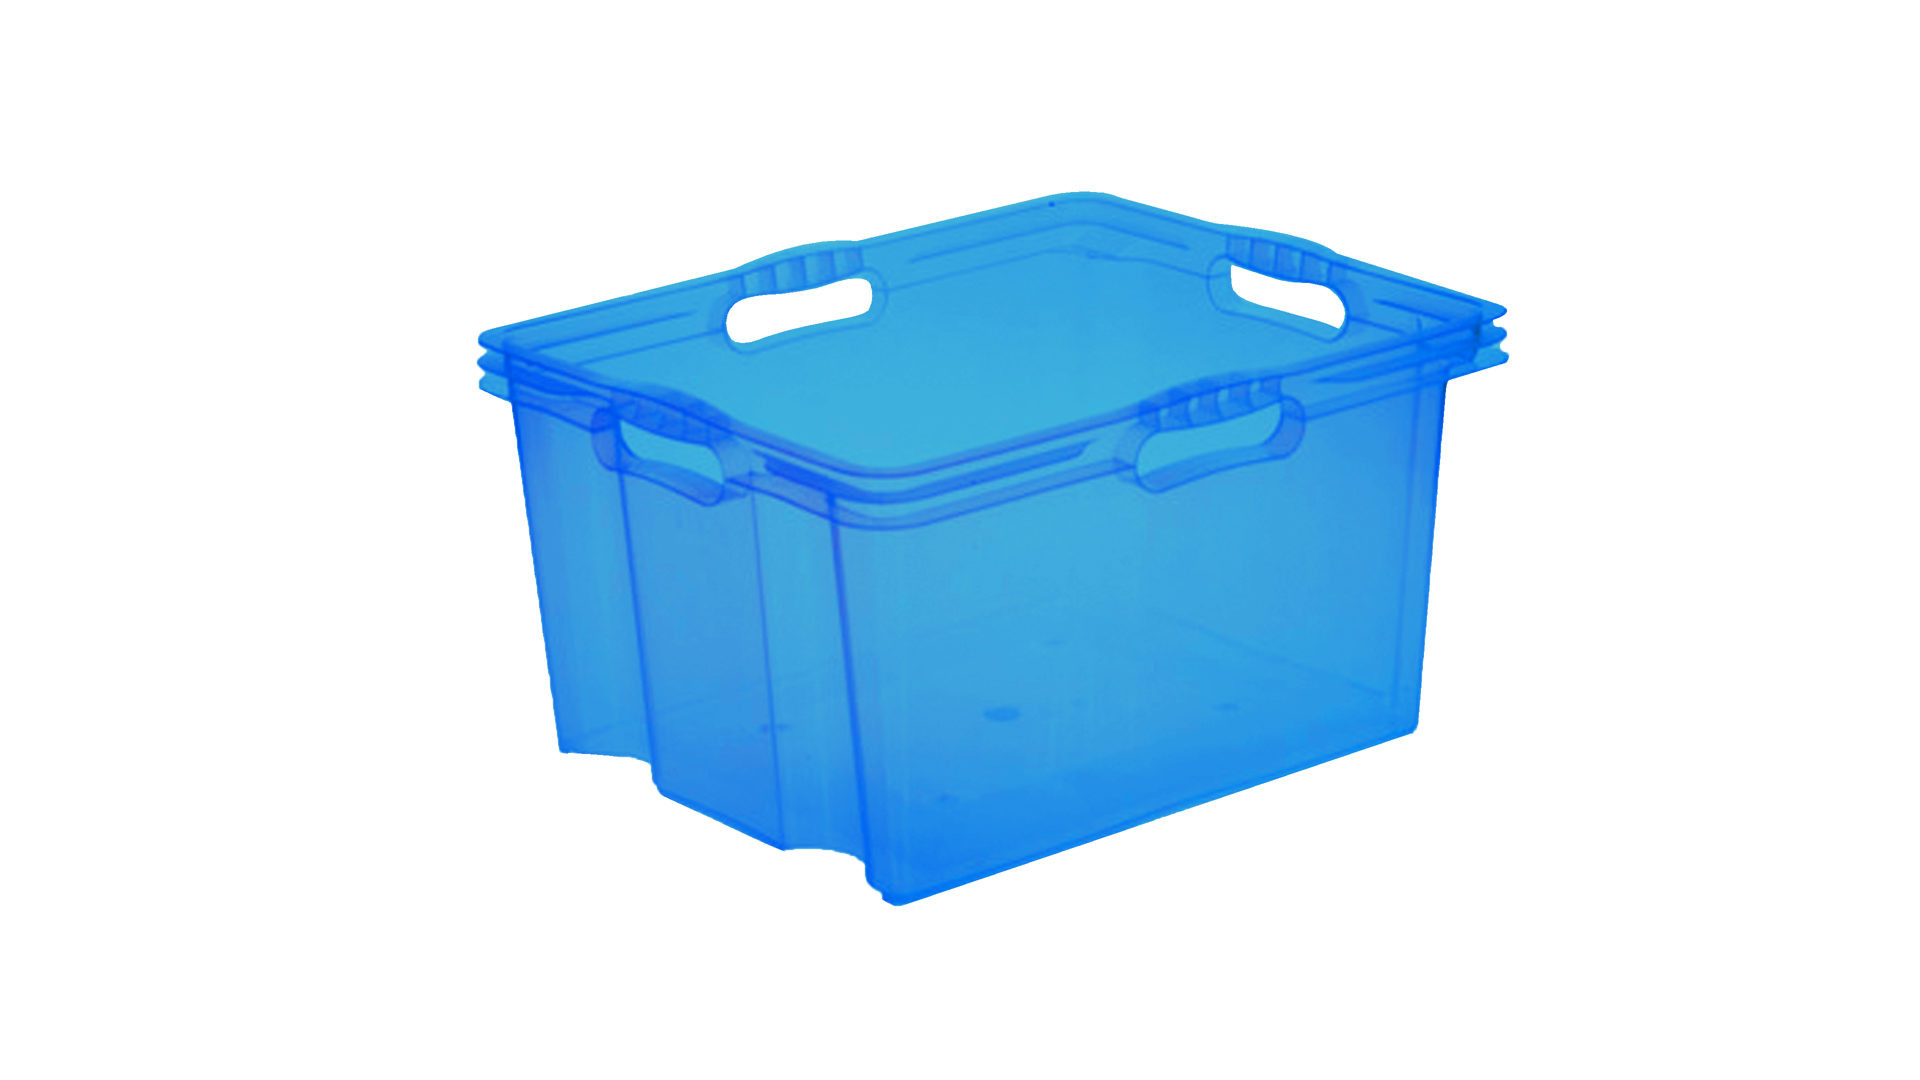 Aufbewahrungsbox Okt | keeeper aus Kunststoff in Blau Multibox XL auch als Wäschebox einsetzbar blauer Kunststoff – ca. 43 x 35 x 23 cm